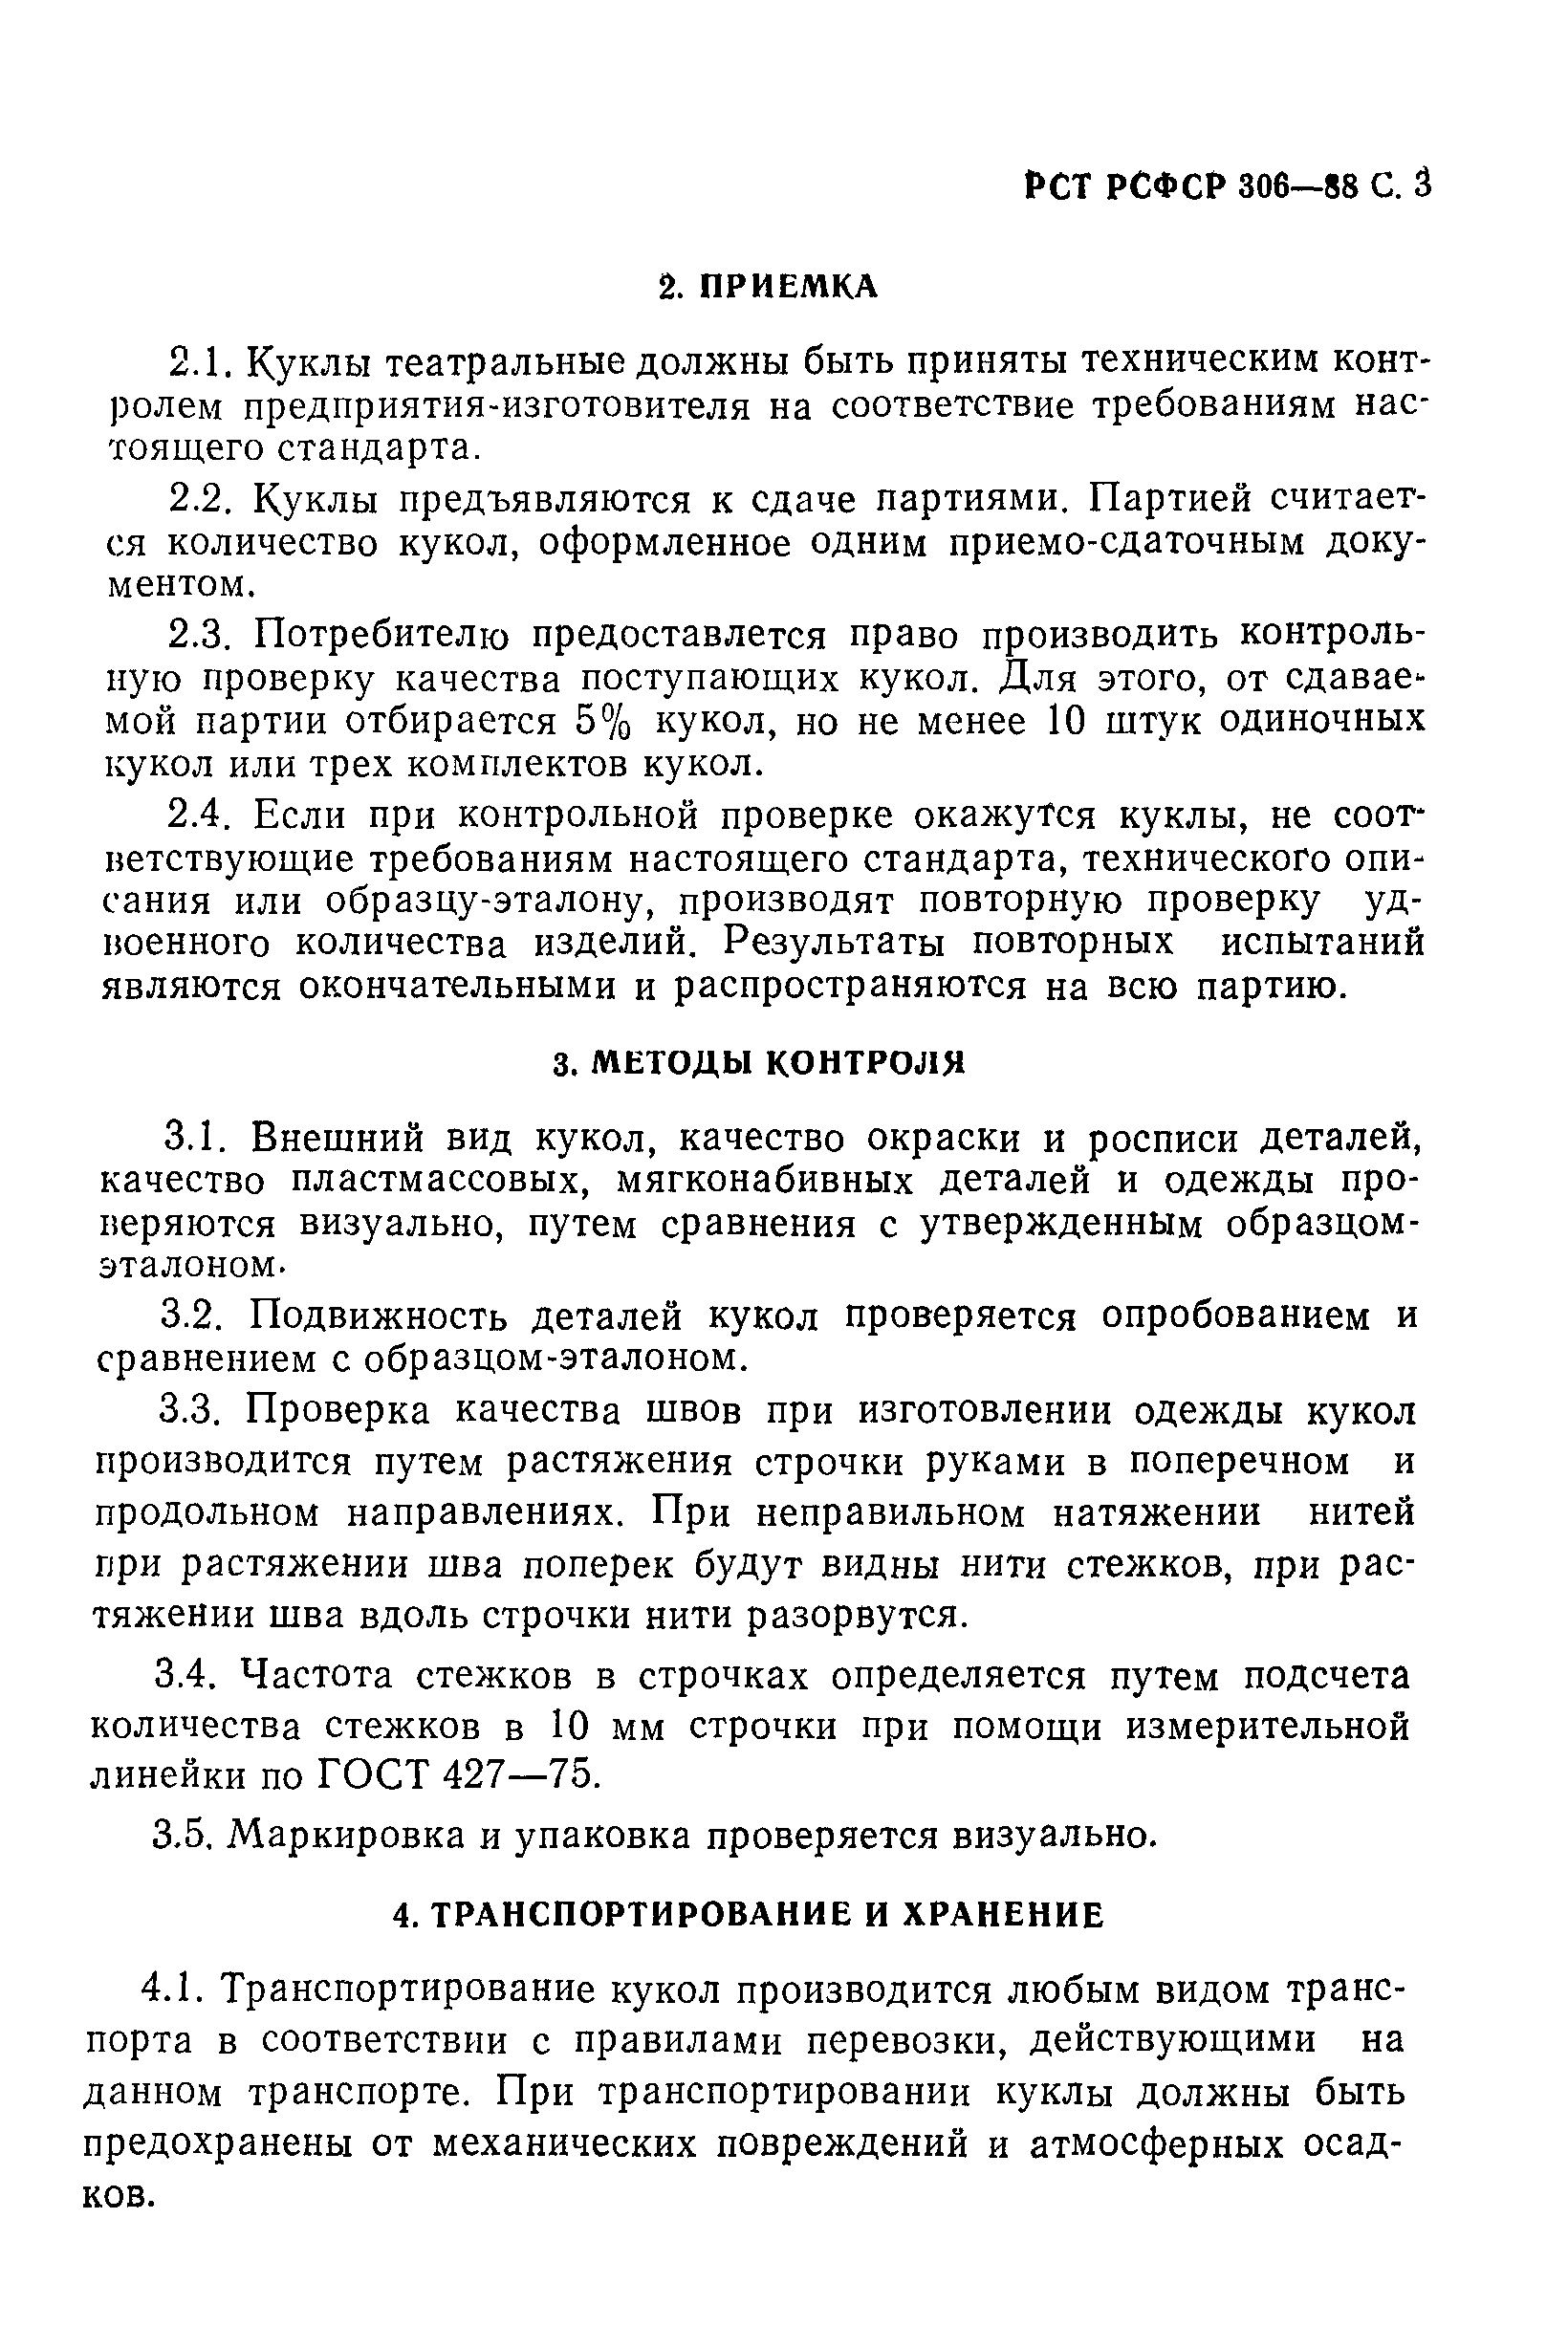 РСТ РСФСР 306-88